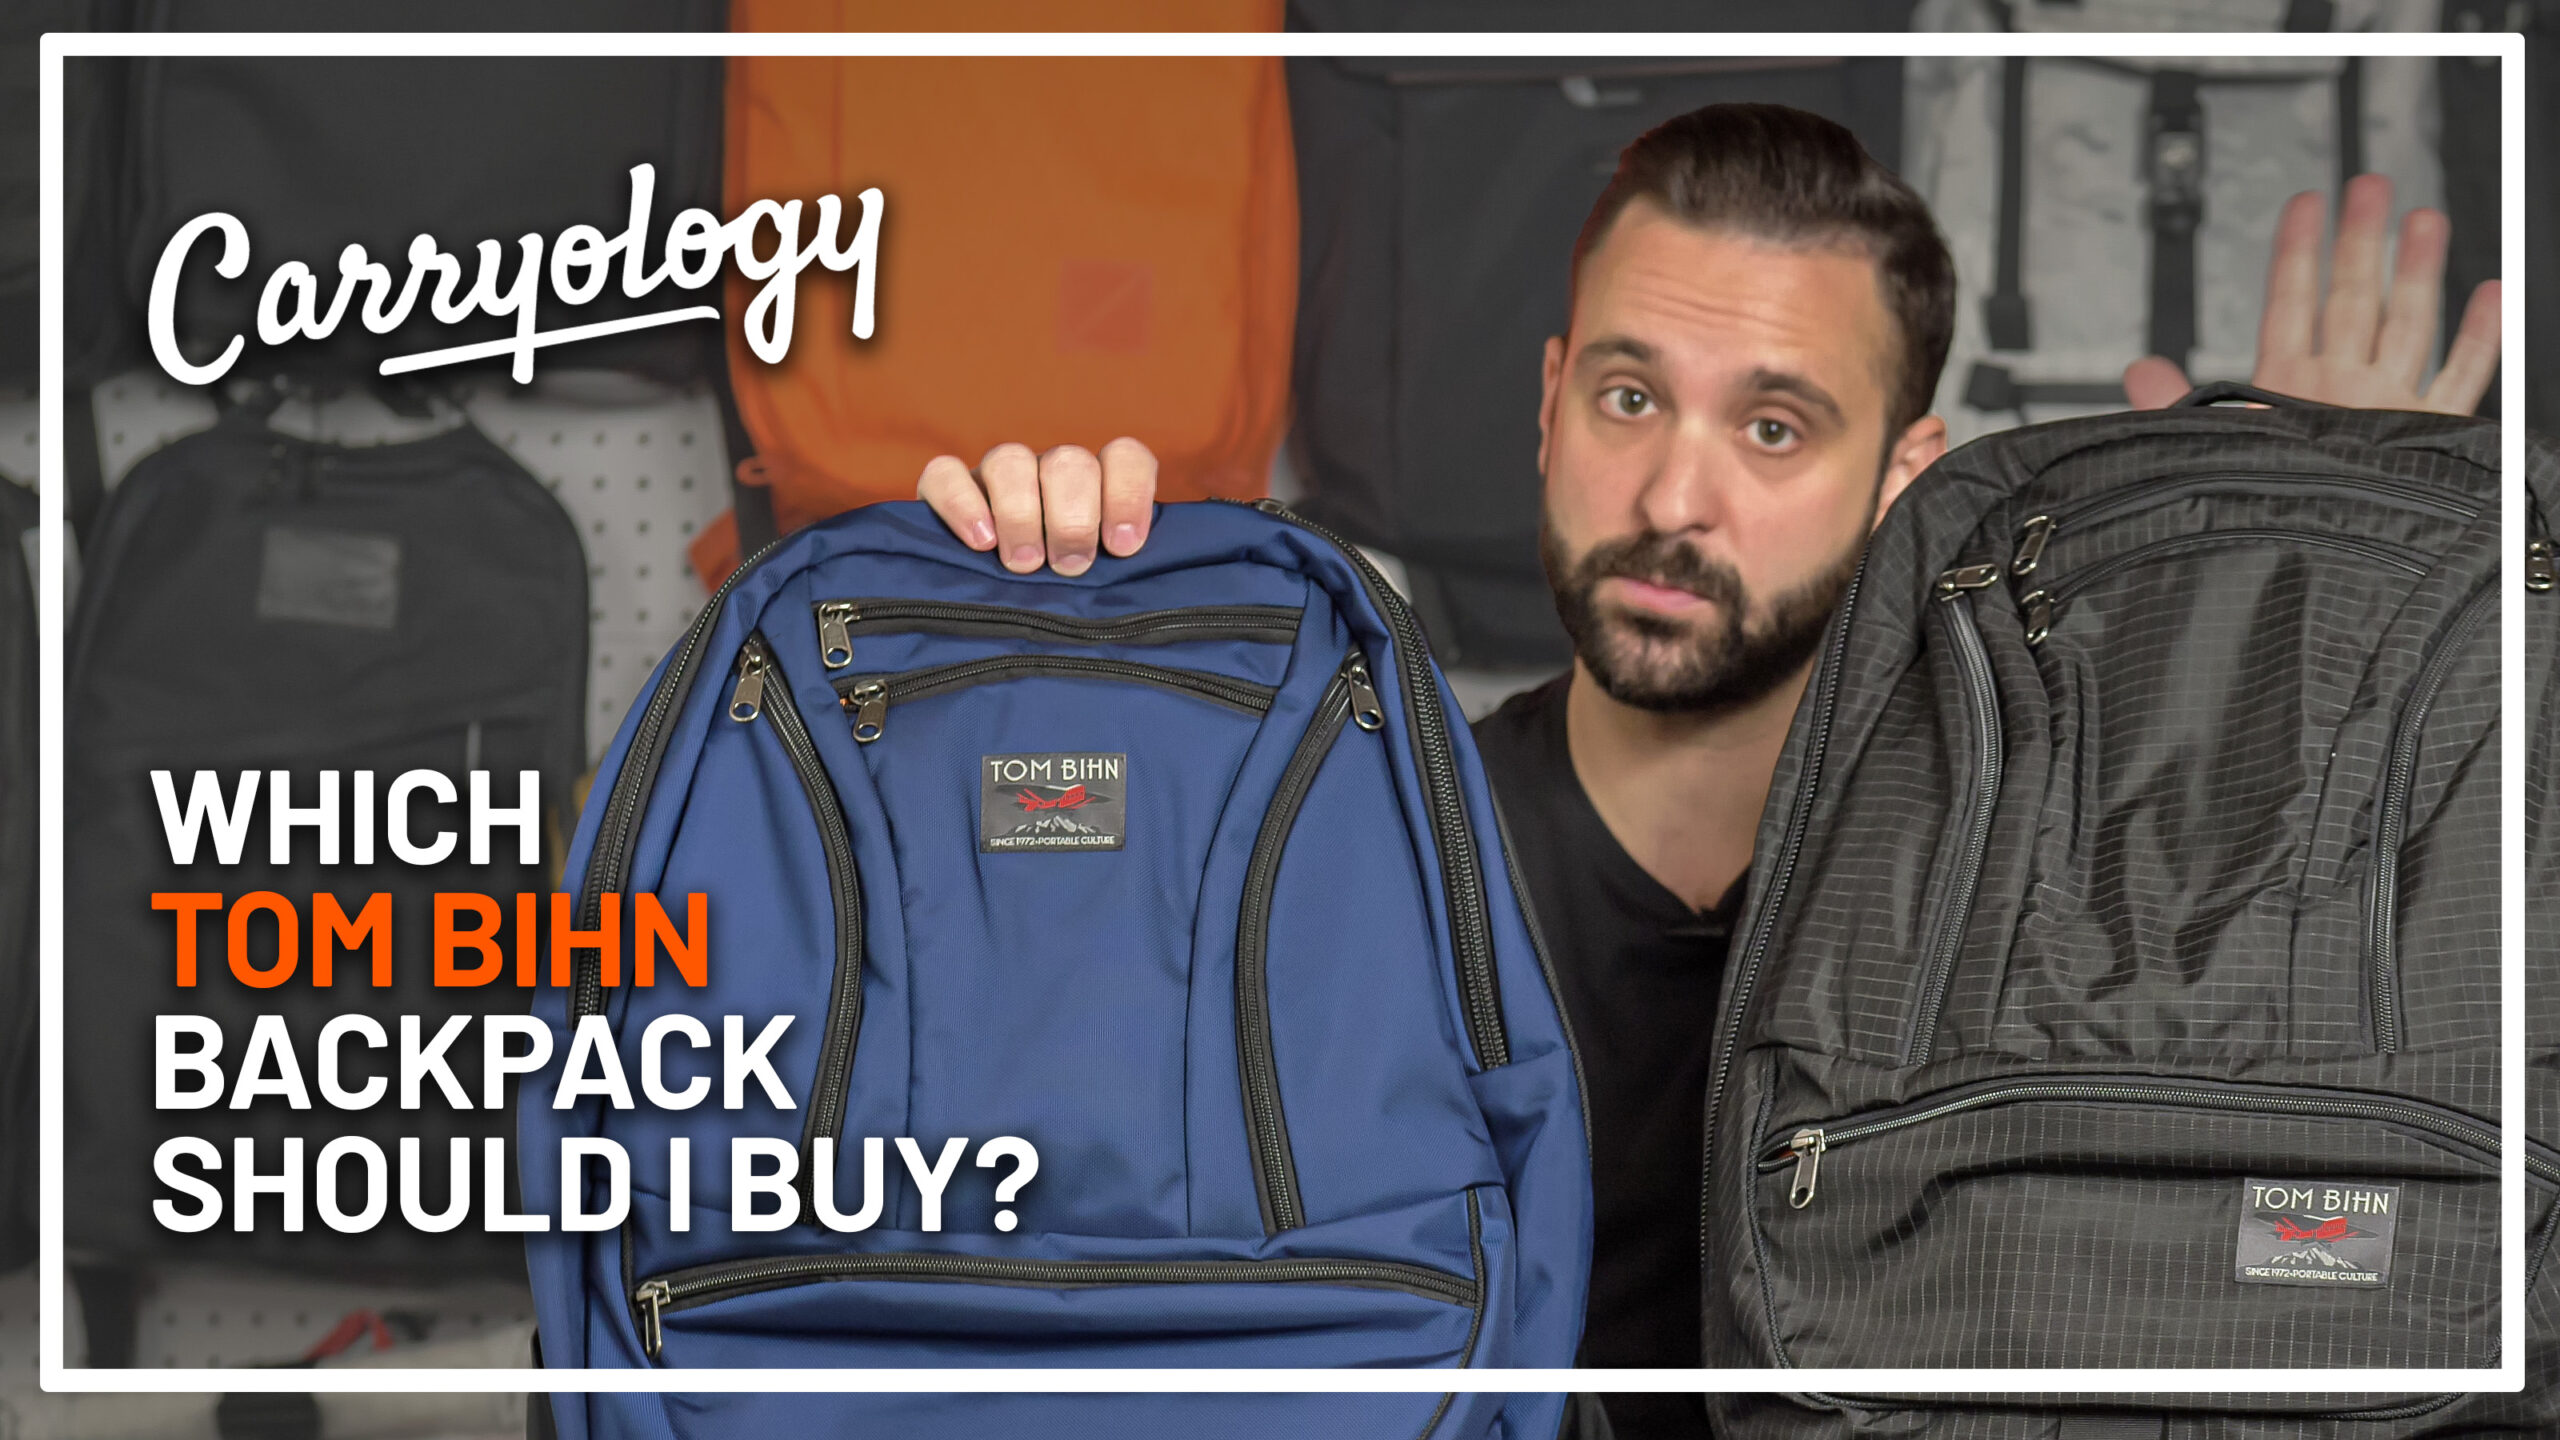 What Tom Bihn Backpack Should I Buy?